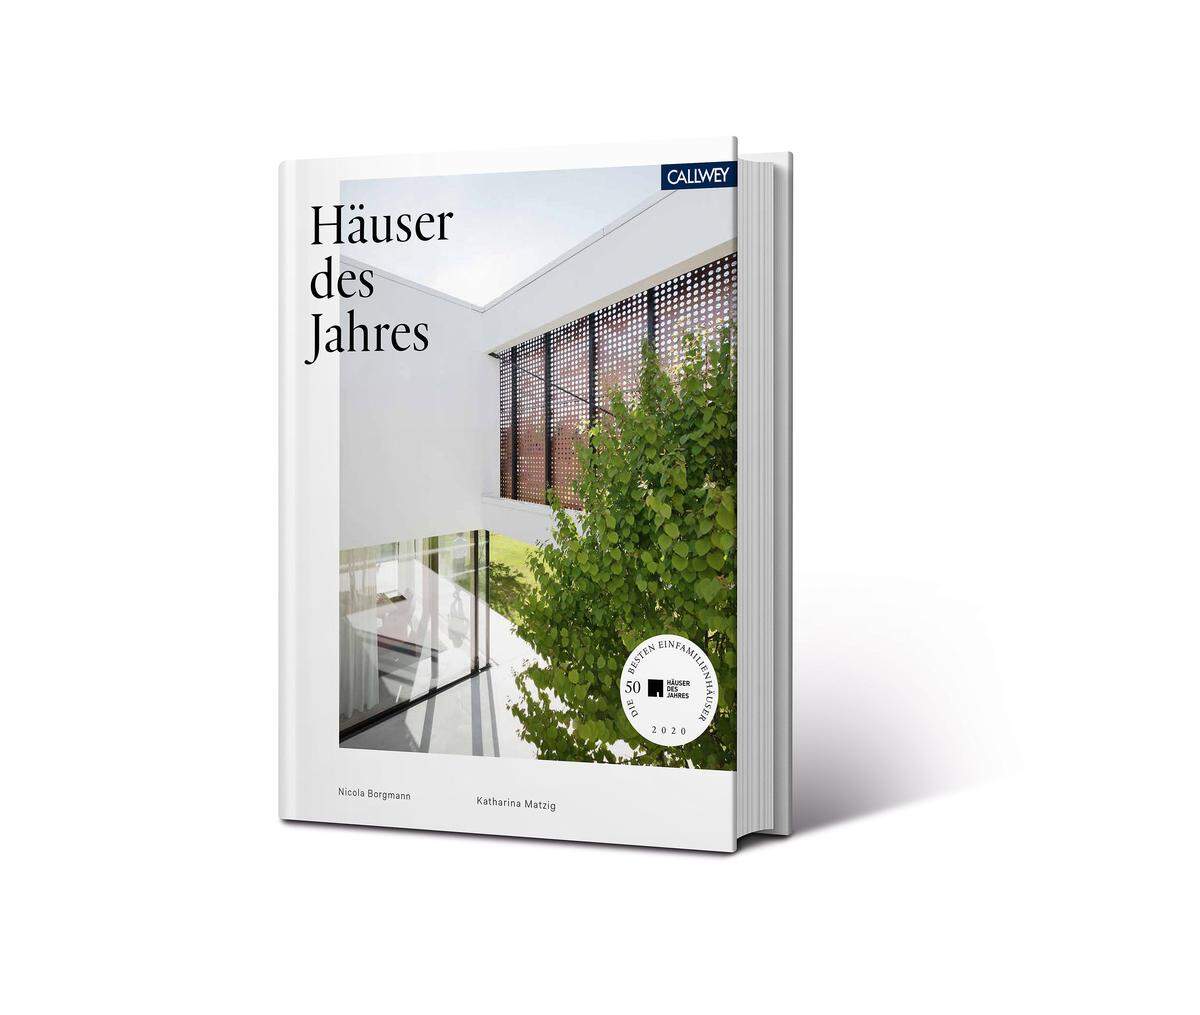 Das Buch zum Wettbewerb präsentiert die 50 besten Häuser - mit zahlreichen Fotos, Lage- und Architektenplänen sowie Projektbeschreibungen: "Häuser des Jahres", erschienen im Callwey Verlag. www.haeuser-des-jahres.com